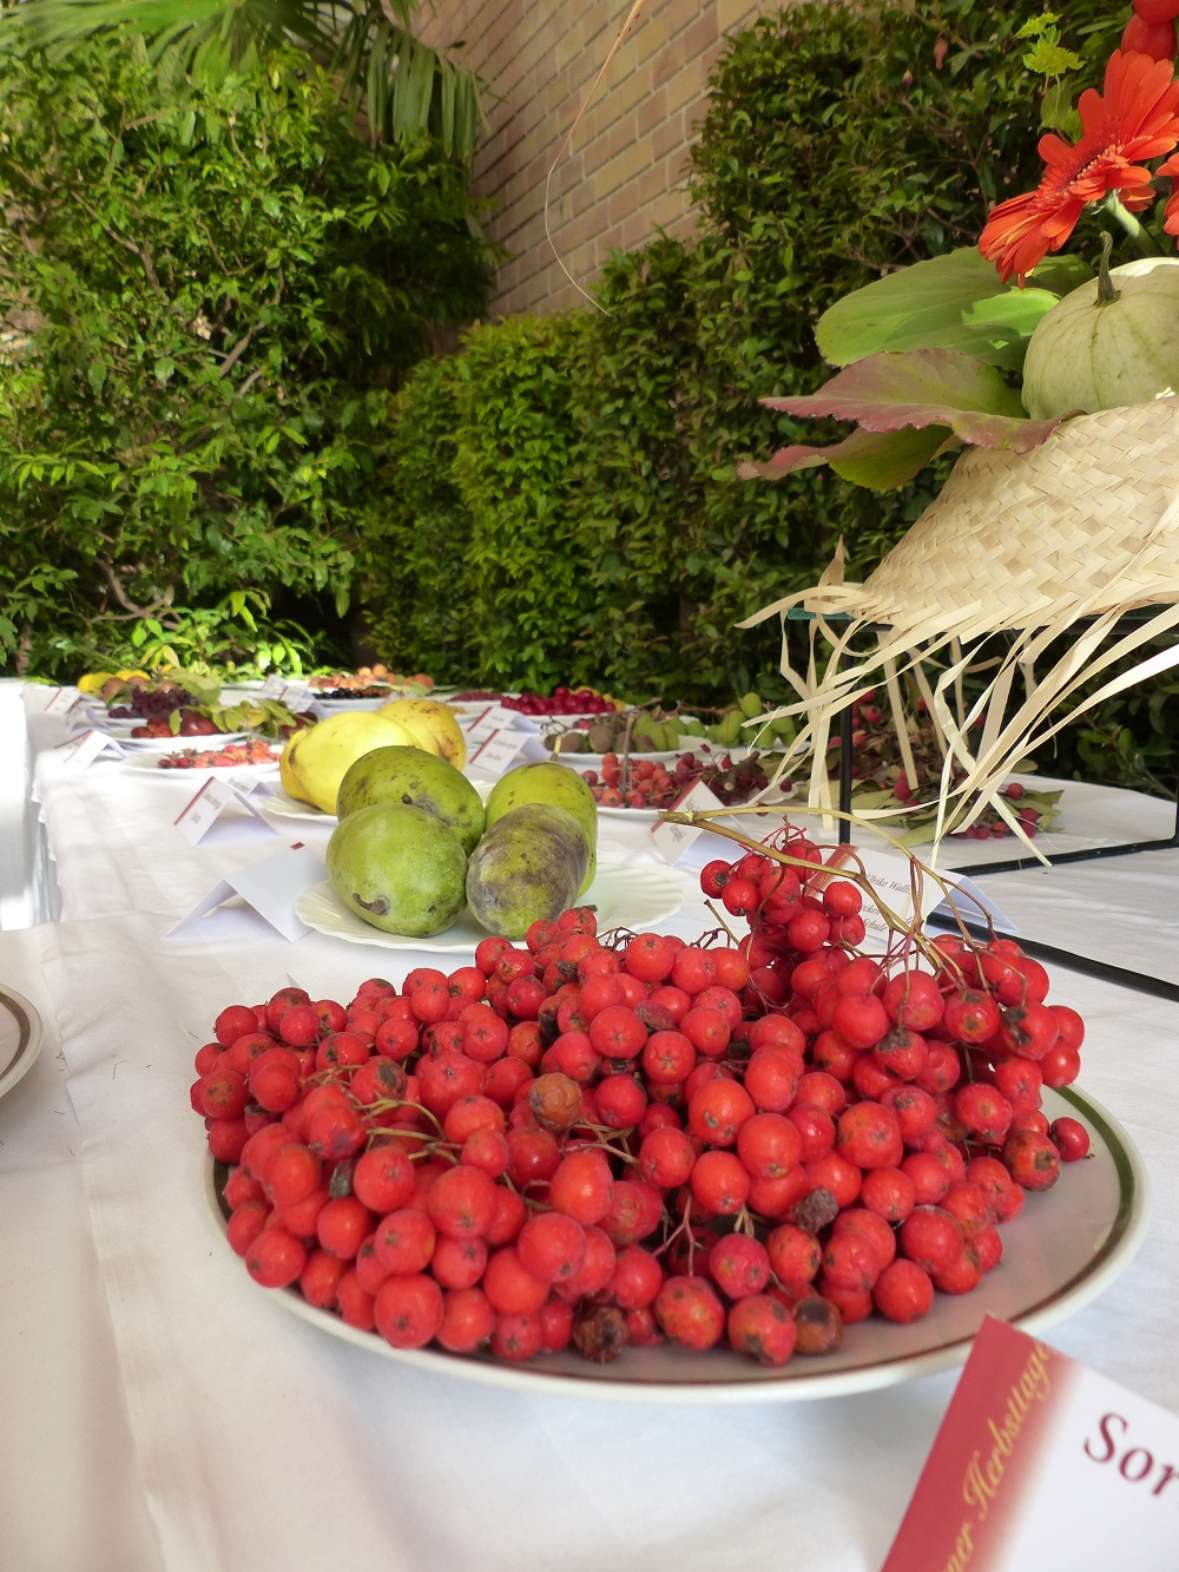 zu sehen ist im Vordergrund eine Schüssel mit roten Trauben, hinter Teller mit grünen und gelben Äpfeln.